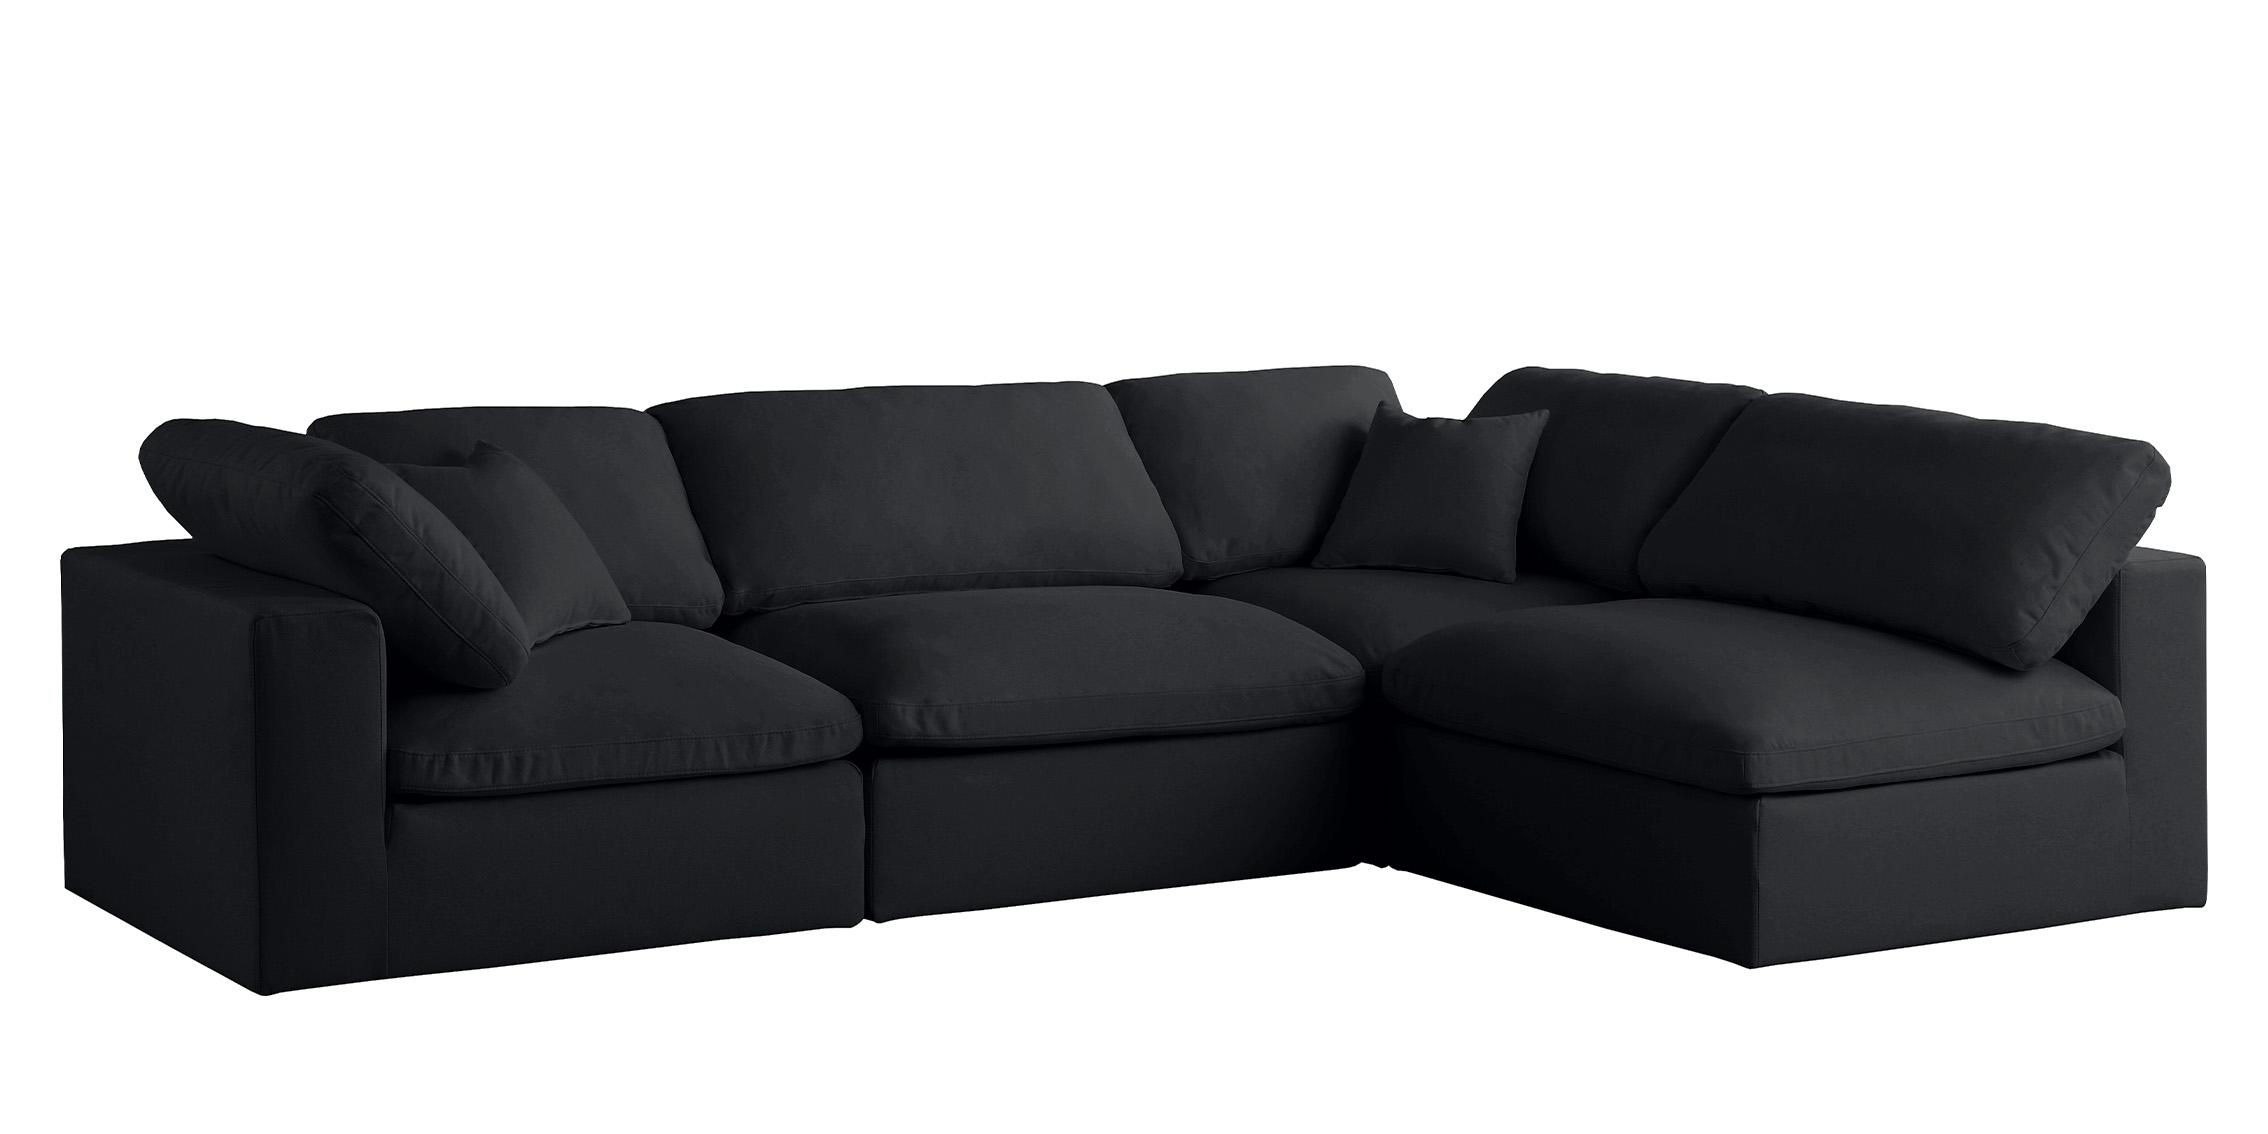 Meridian Furniture 602Black-Sec4B Sectional Sofa